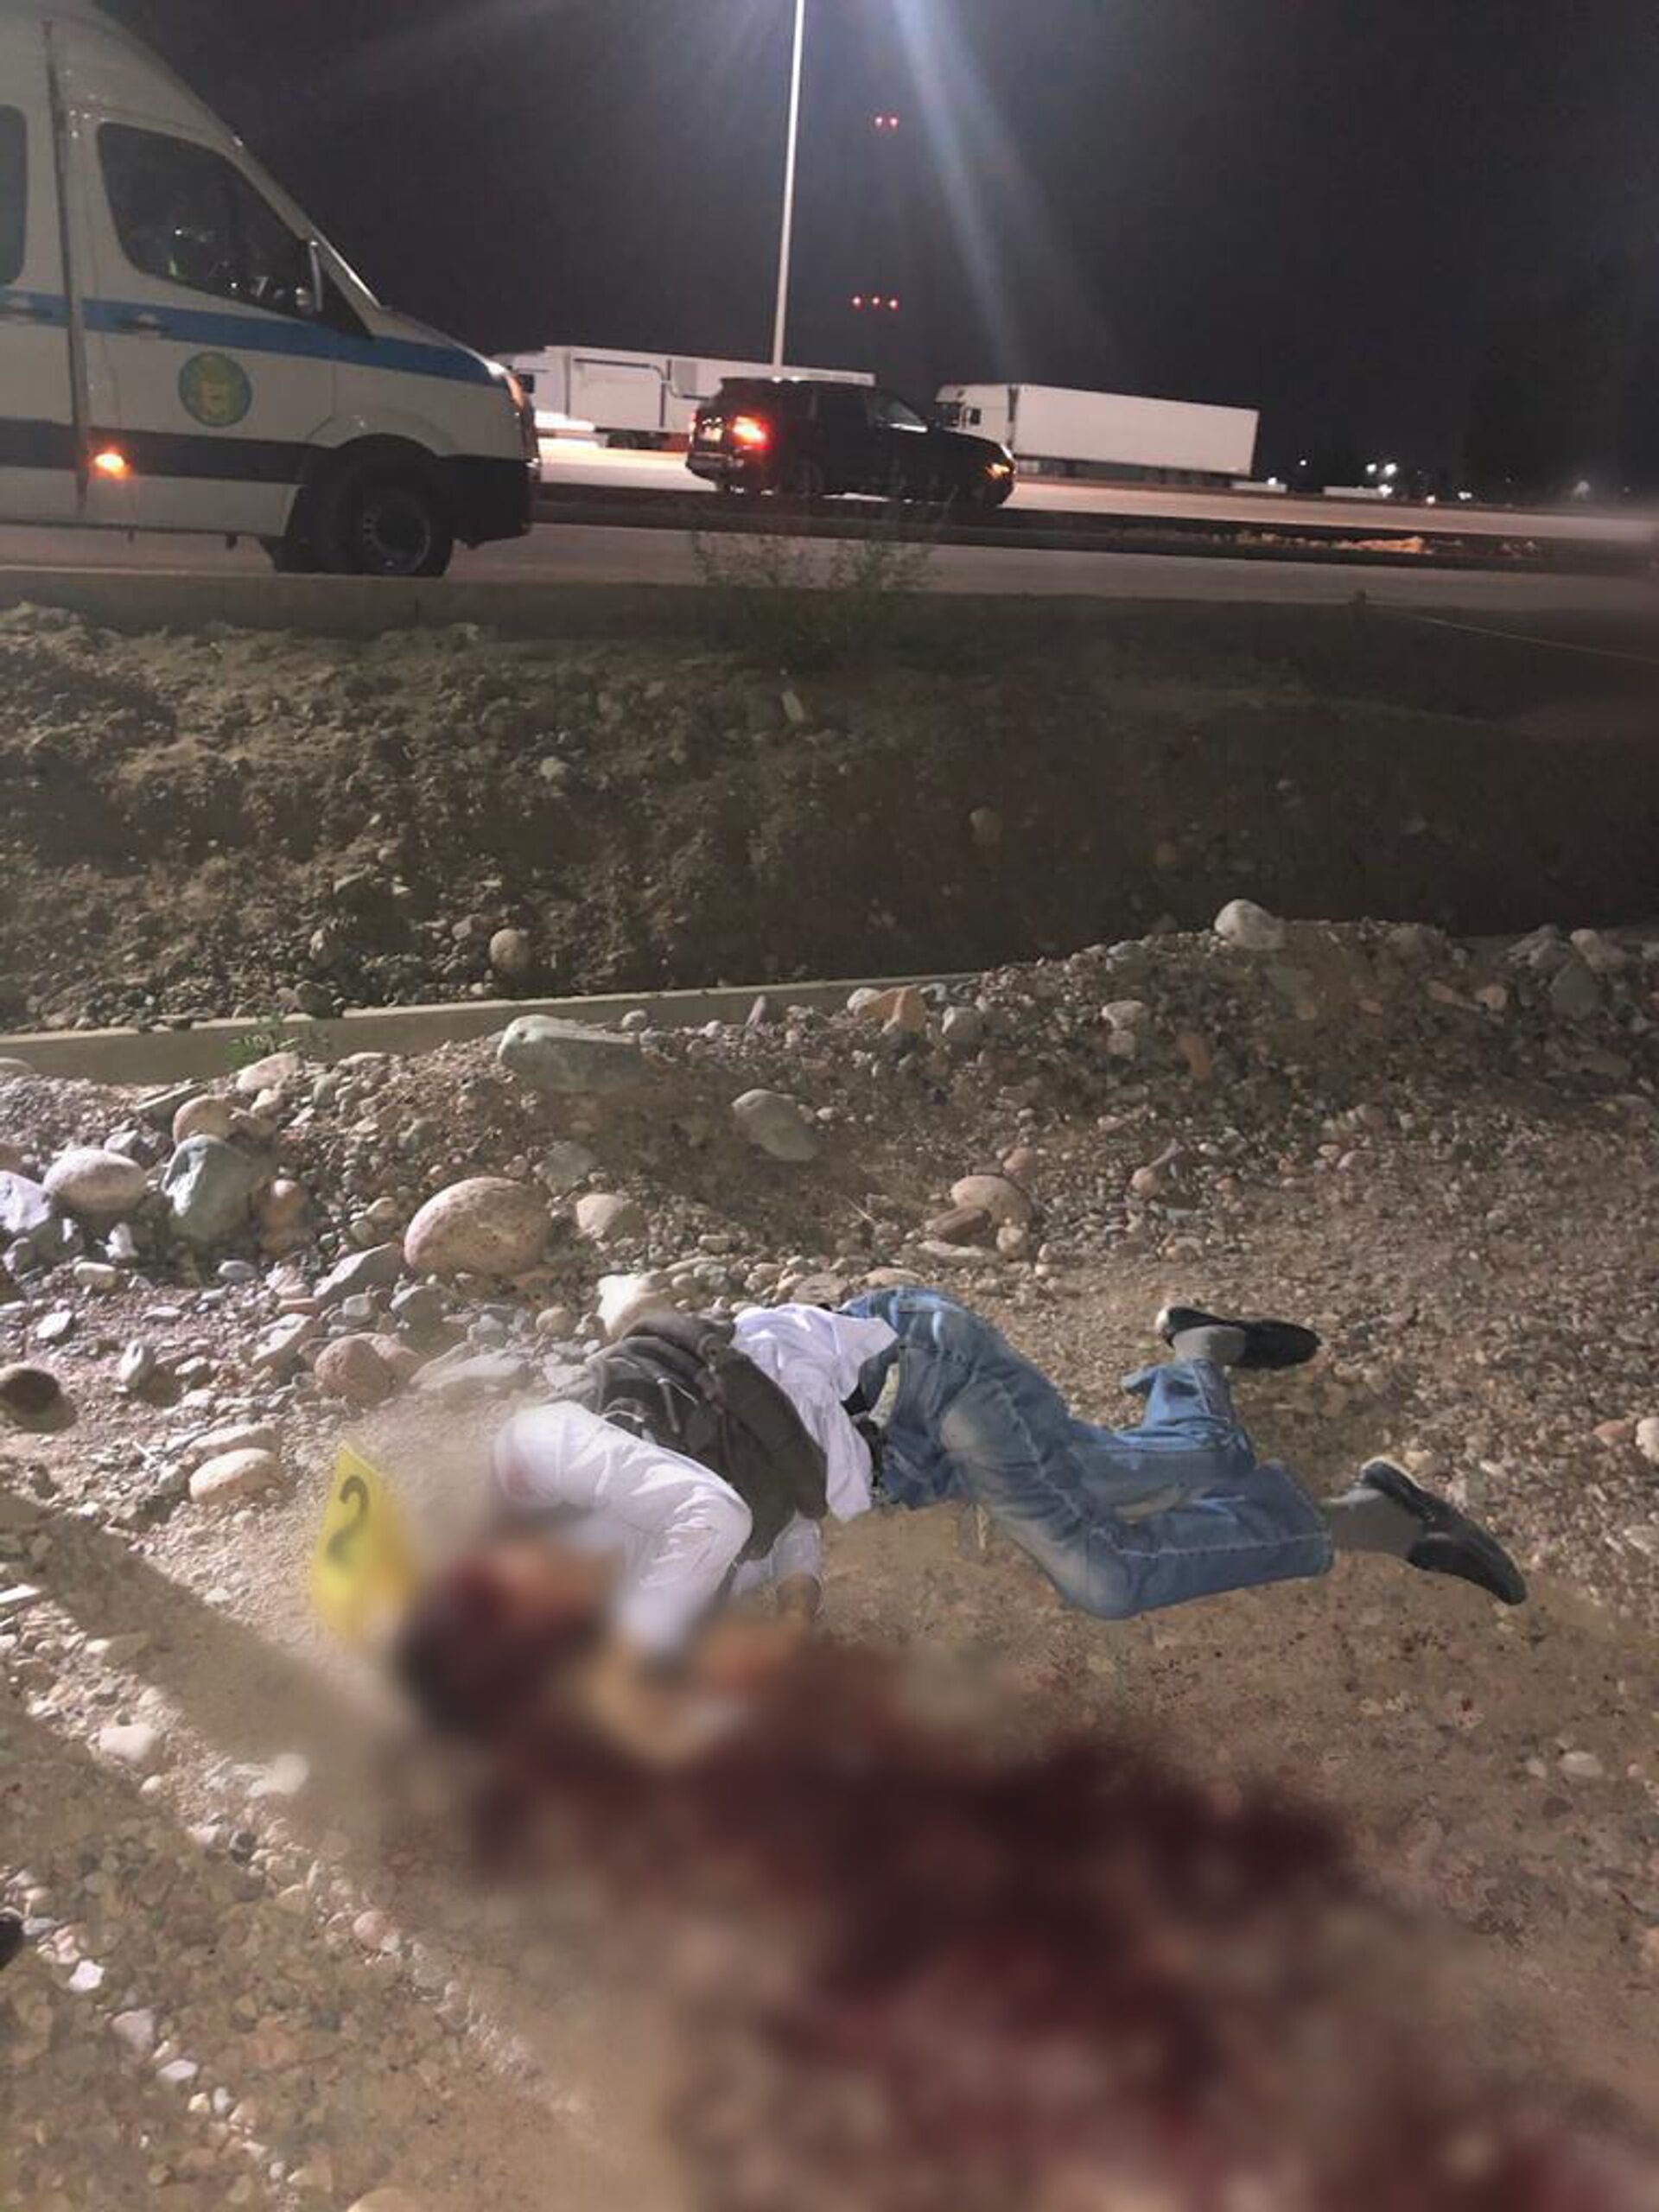 Тело мужчины обнаружено вблизи торгового центра в Алматы - Sputnik Казахстан, 1920, 17.05.2021